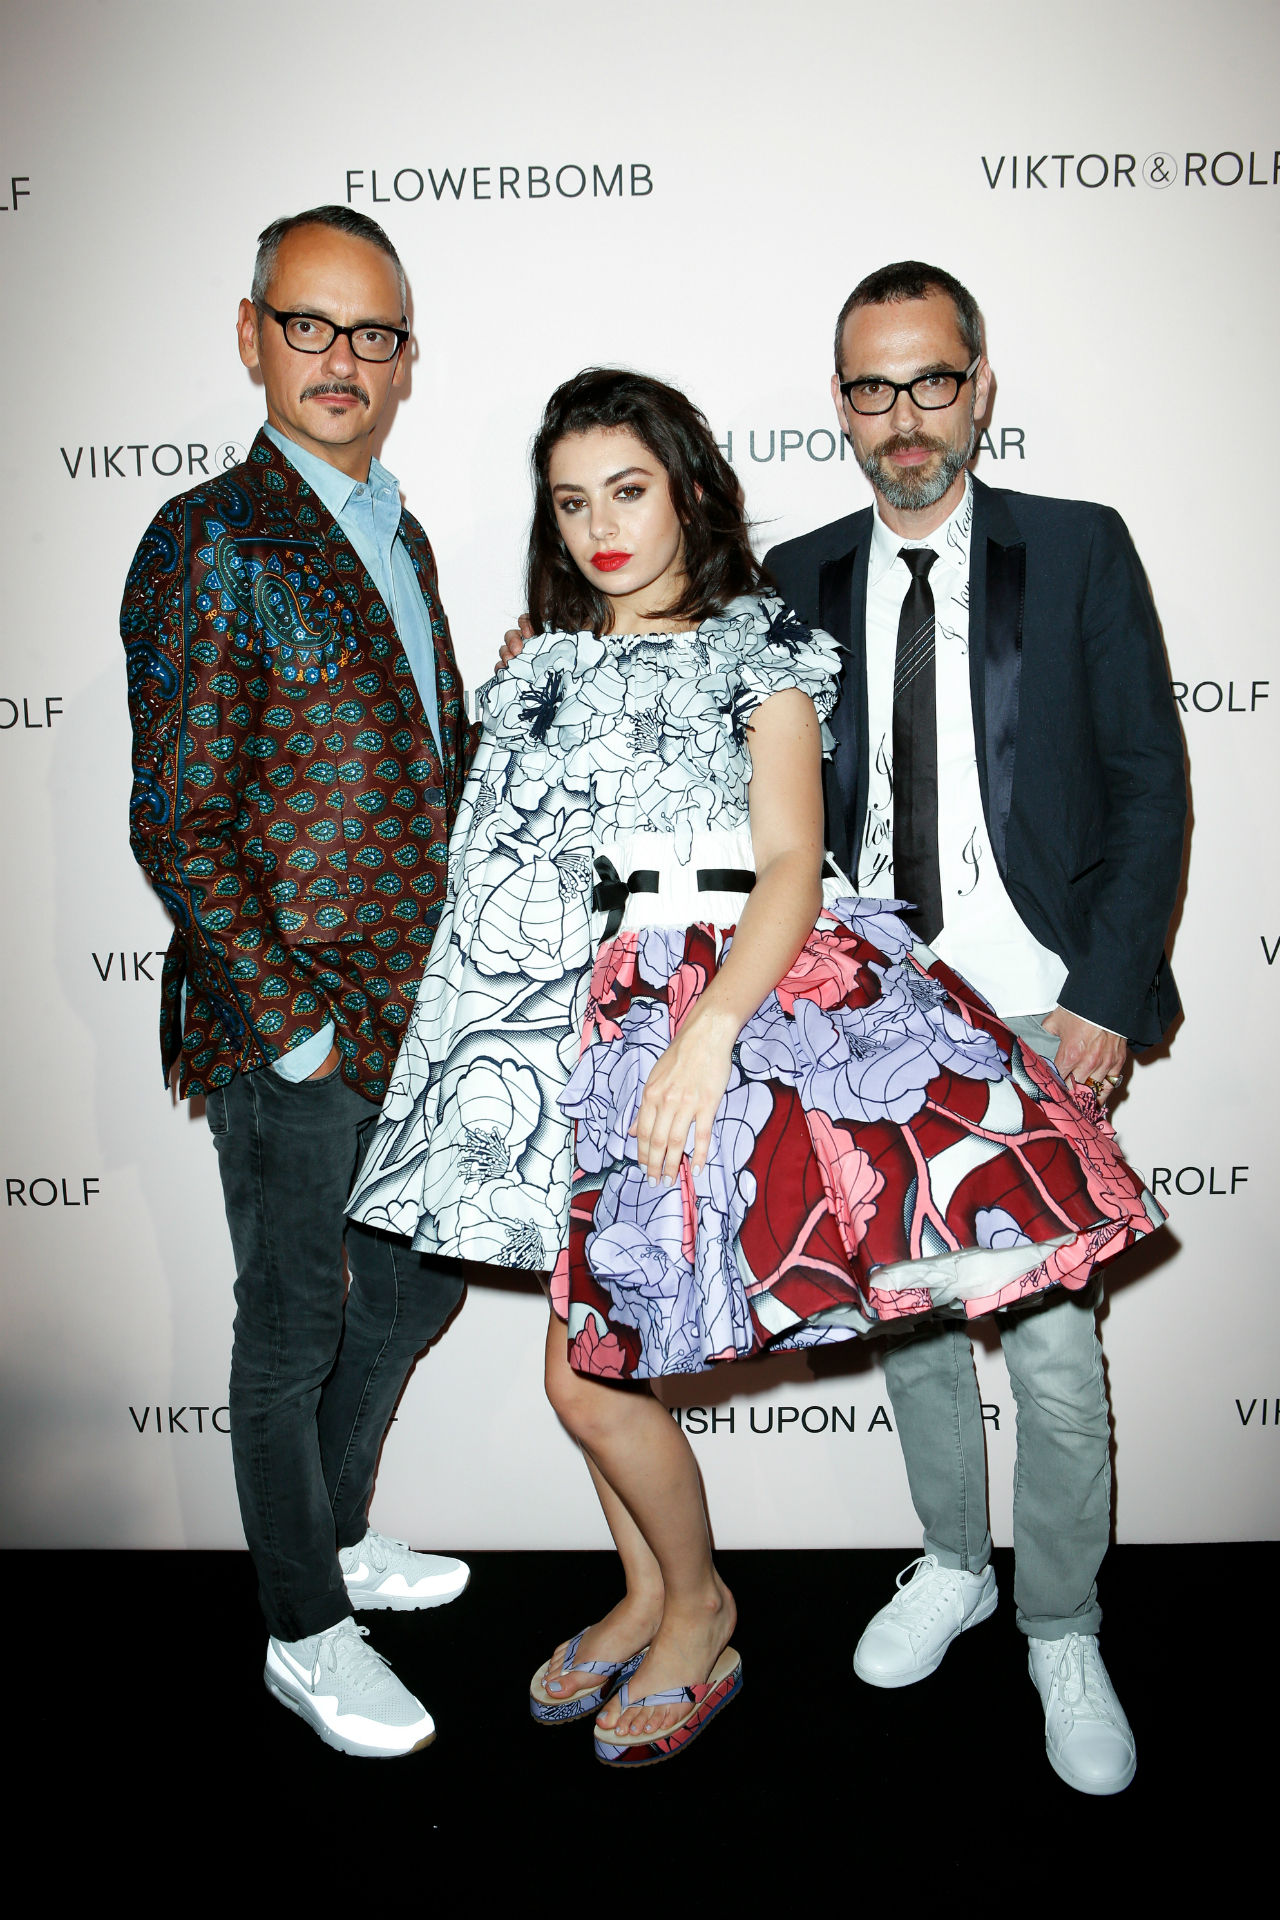 Viktor & Rolf 2015 Sonbahar/Kış Couture Ön Sıradakiler